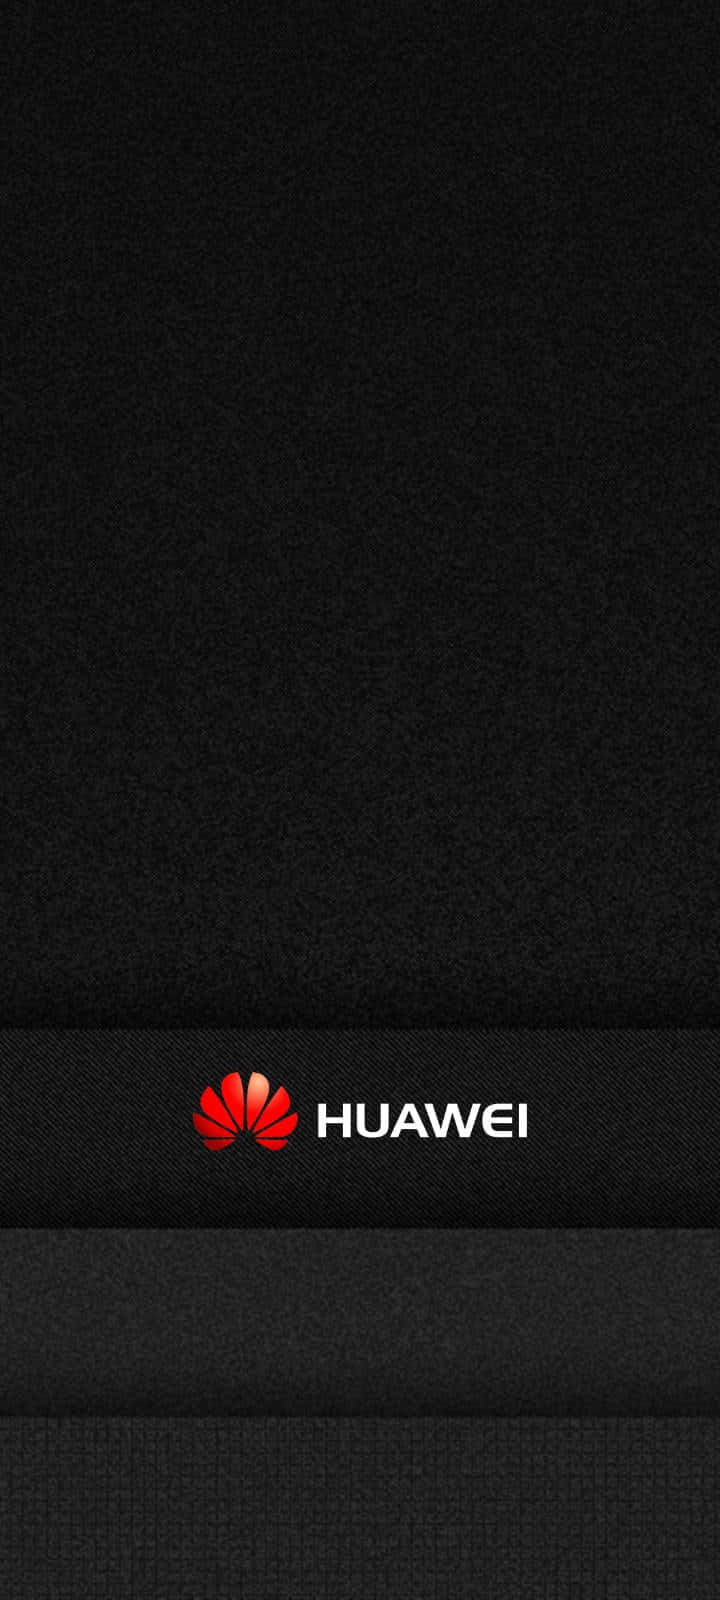 Nuovosmartphone Huawei P20 Pro - Un'esperienza Più Grande E Migliore